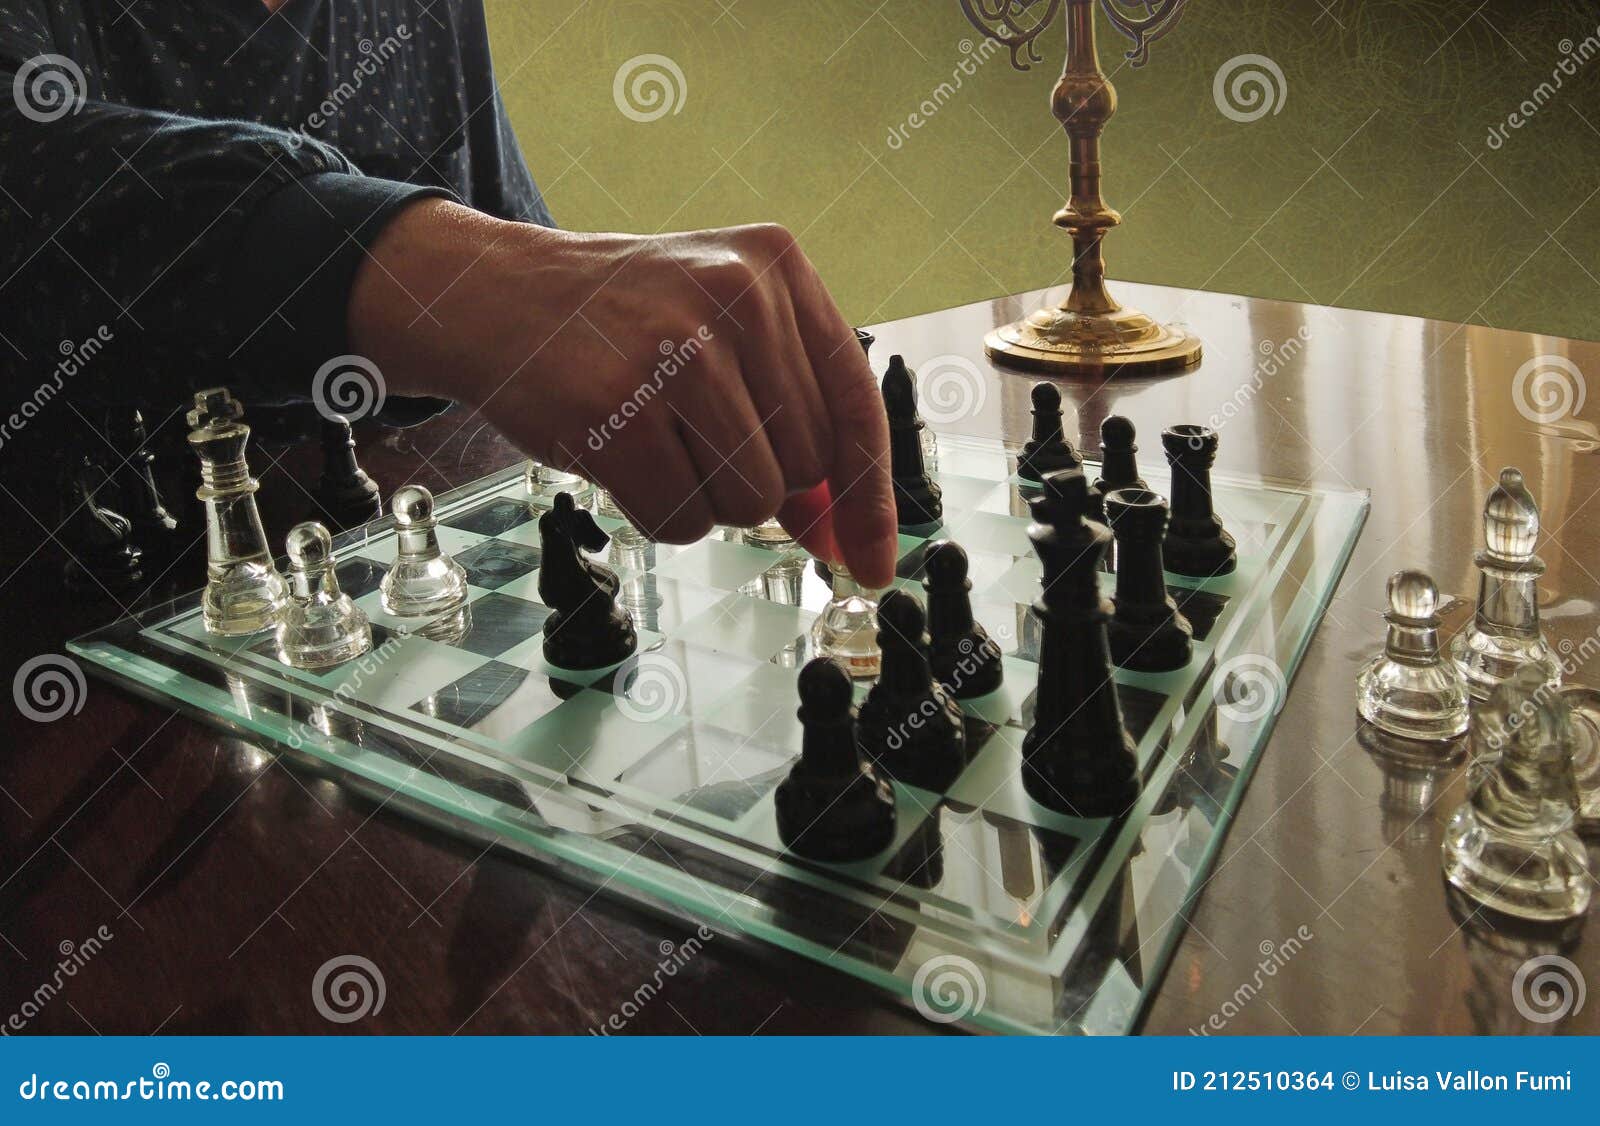 Pessoa jogando jogo de tabuleiro de xadrez, imagem conceitual de